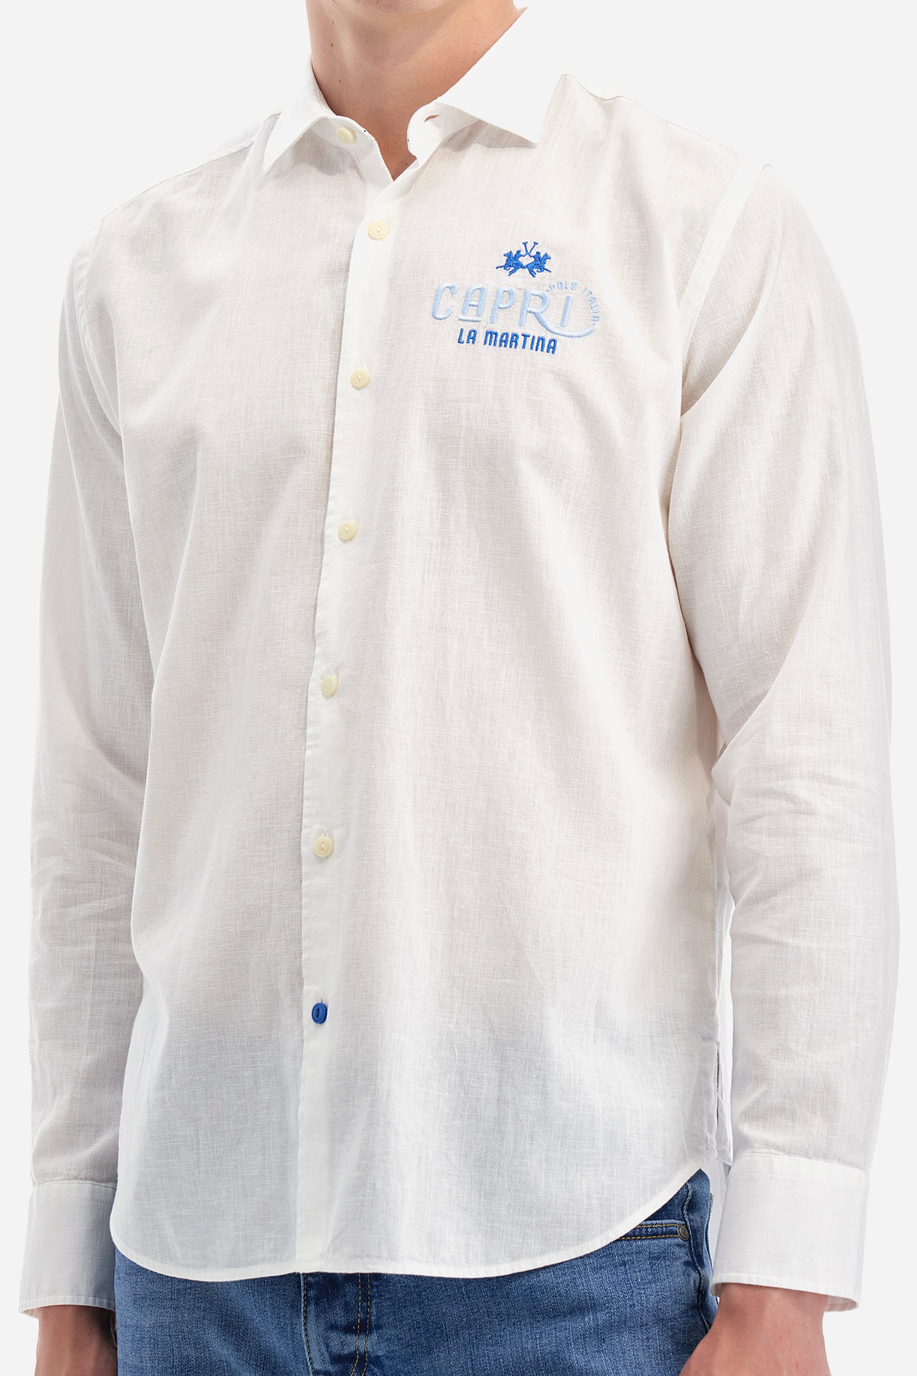 Camicia in cotone e lino - Innocent - Camicie | La Martina - Official Online Shop